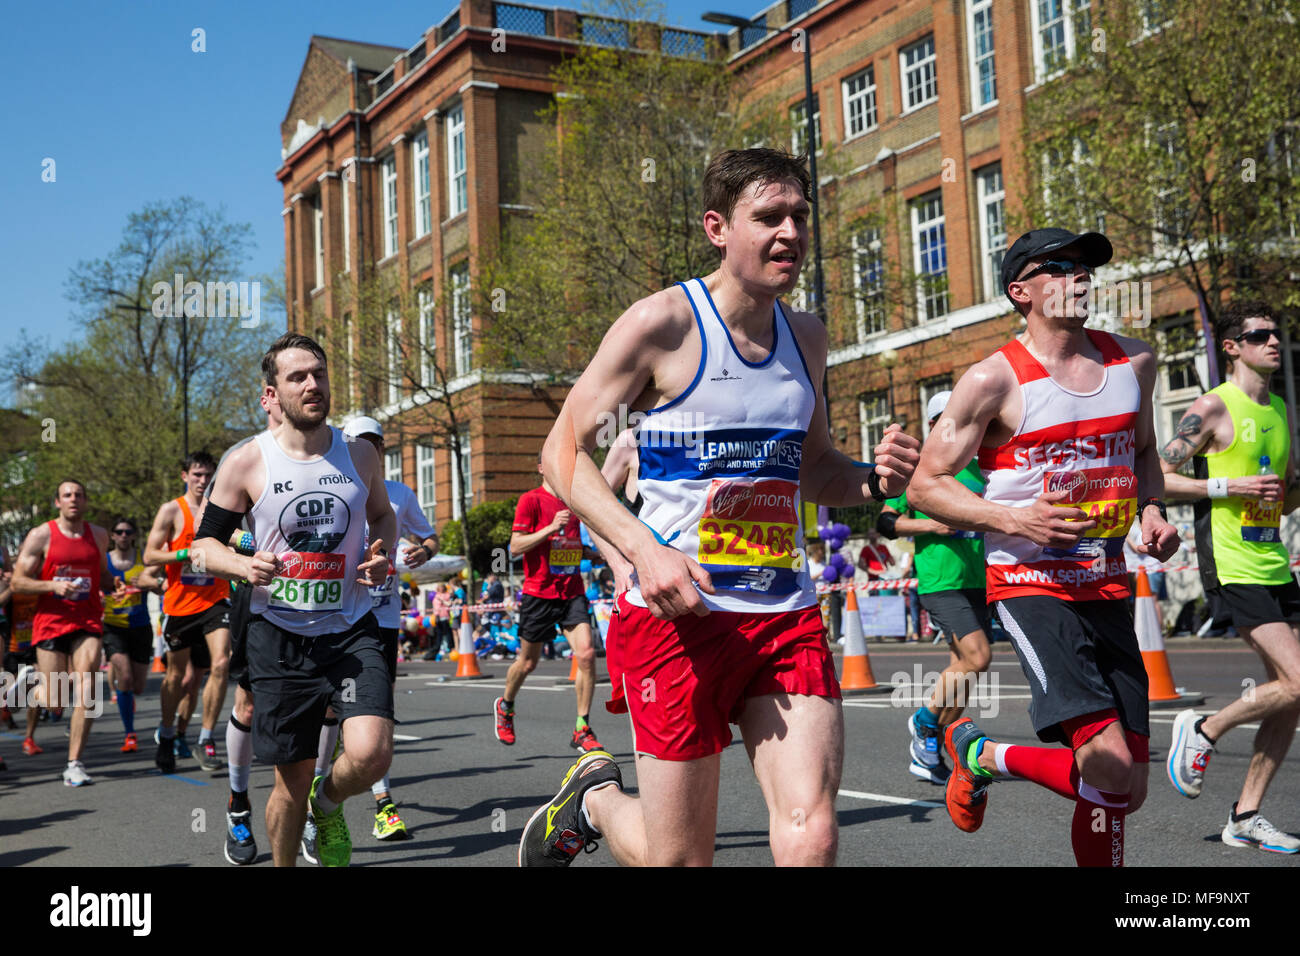 Londra, Regno Unito. Il 22 aprile, 2018. Charlie Staveley (c) di Leamington in bicicletta e Athletic Club competere nel 2018 denaro Virgin London Marathon. Foto Stock